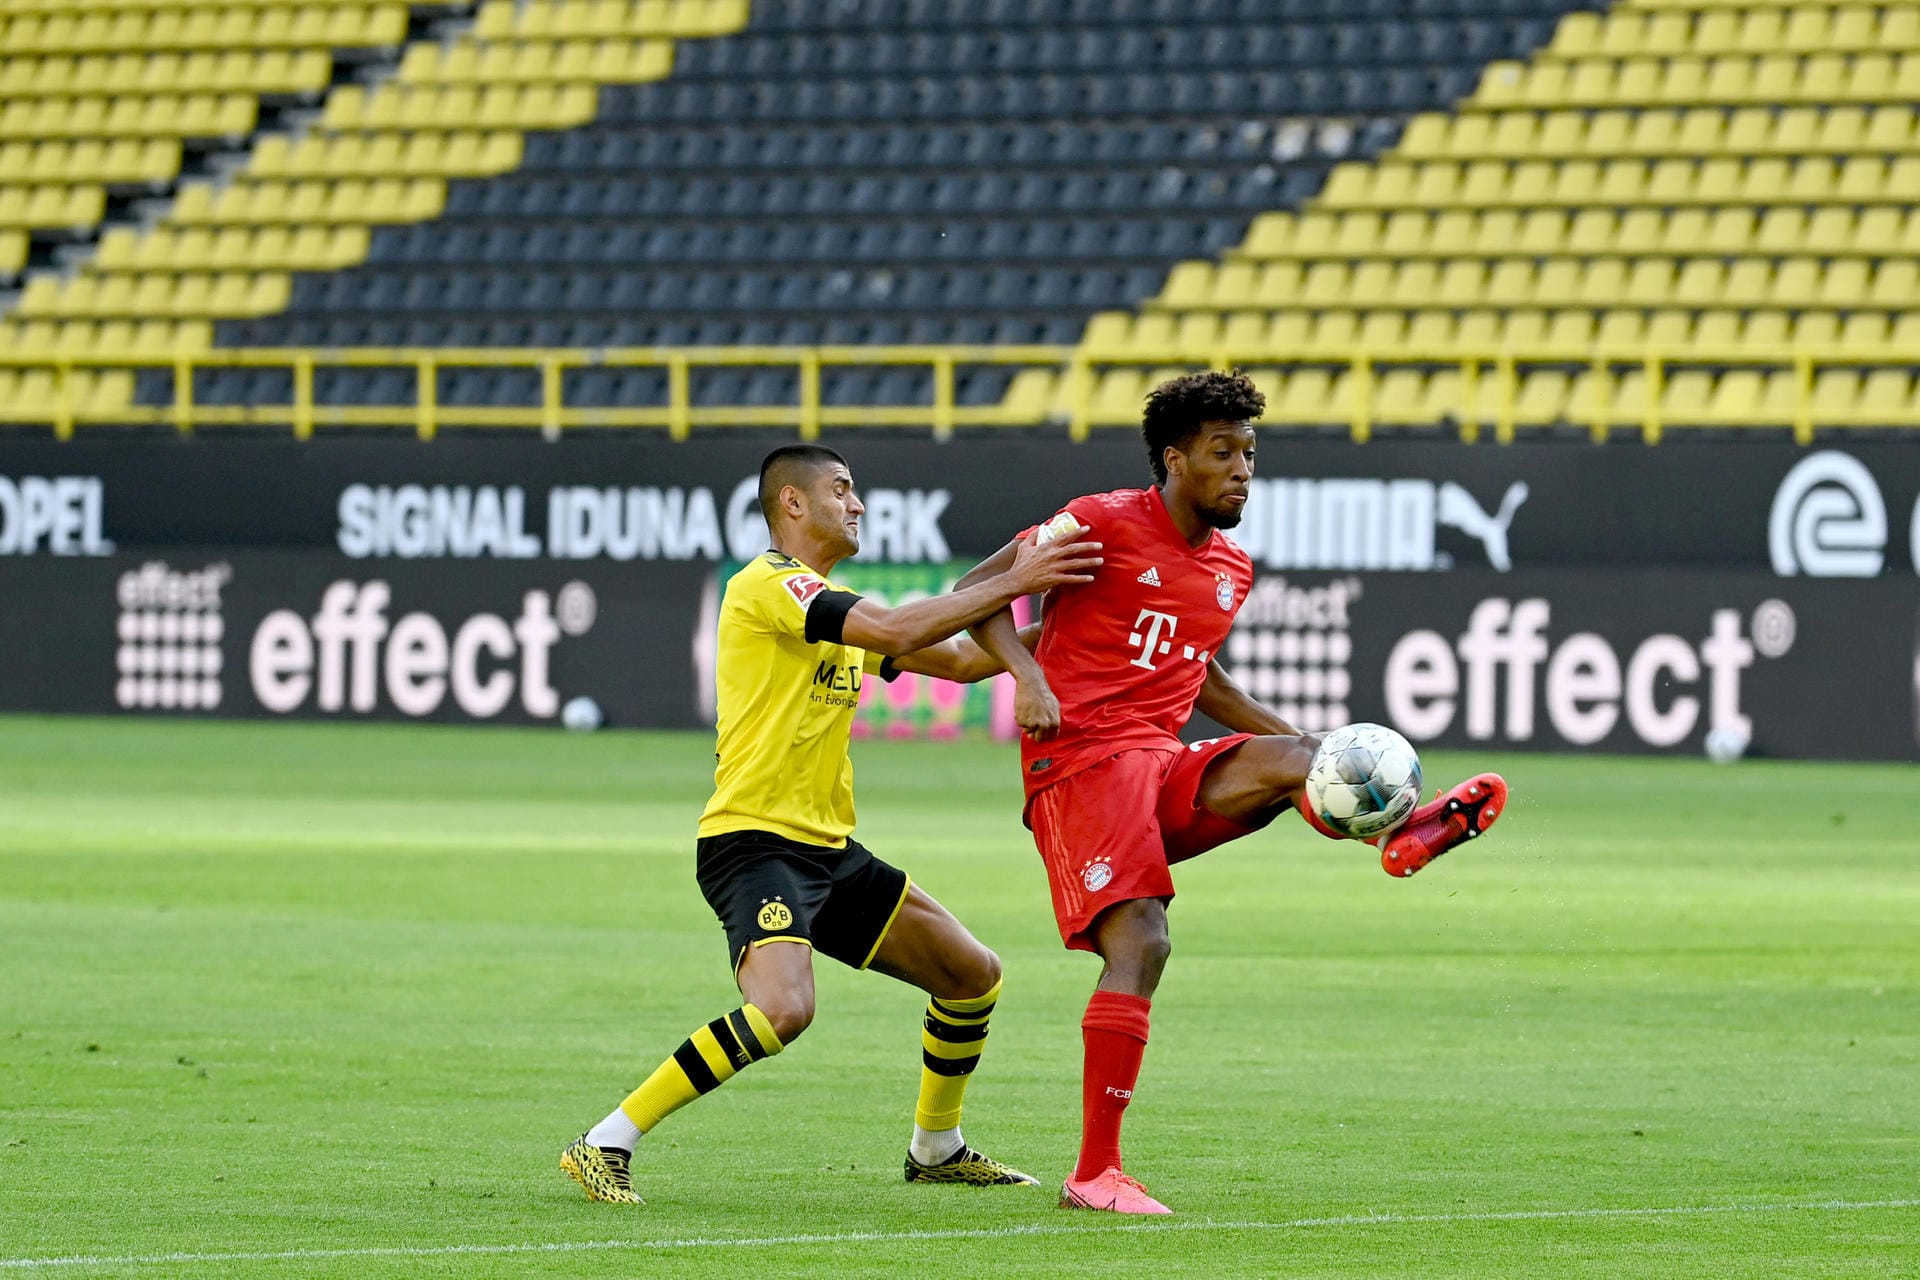 Kingsley Coman: Spielte seine Schnelligkeitsvorteile gegen die Dortmunder Defensive aus – vor allem gegen BVB-Verteidiger Hummels. Agierte vor dem gegnerischen Tor allerdings unglücklich. Note: 3